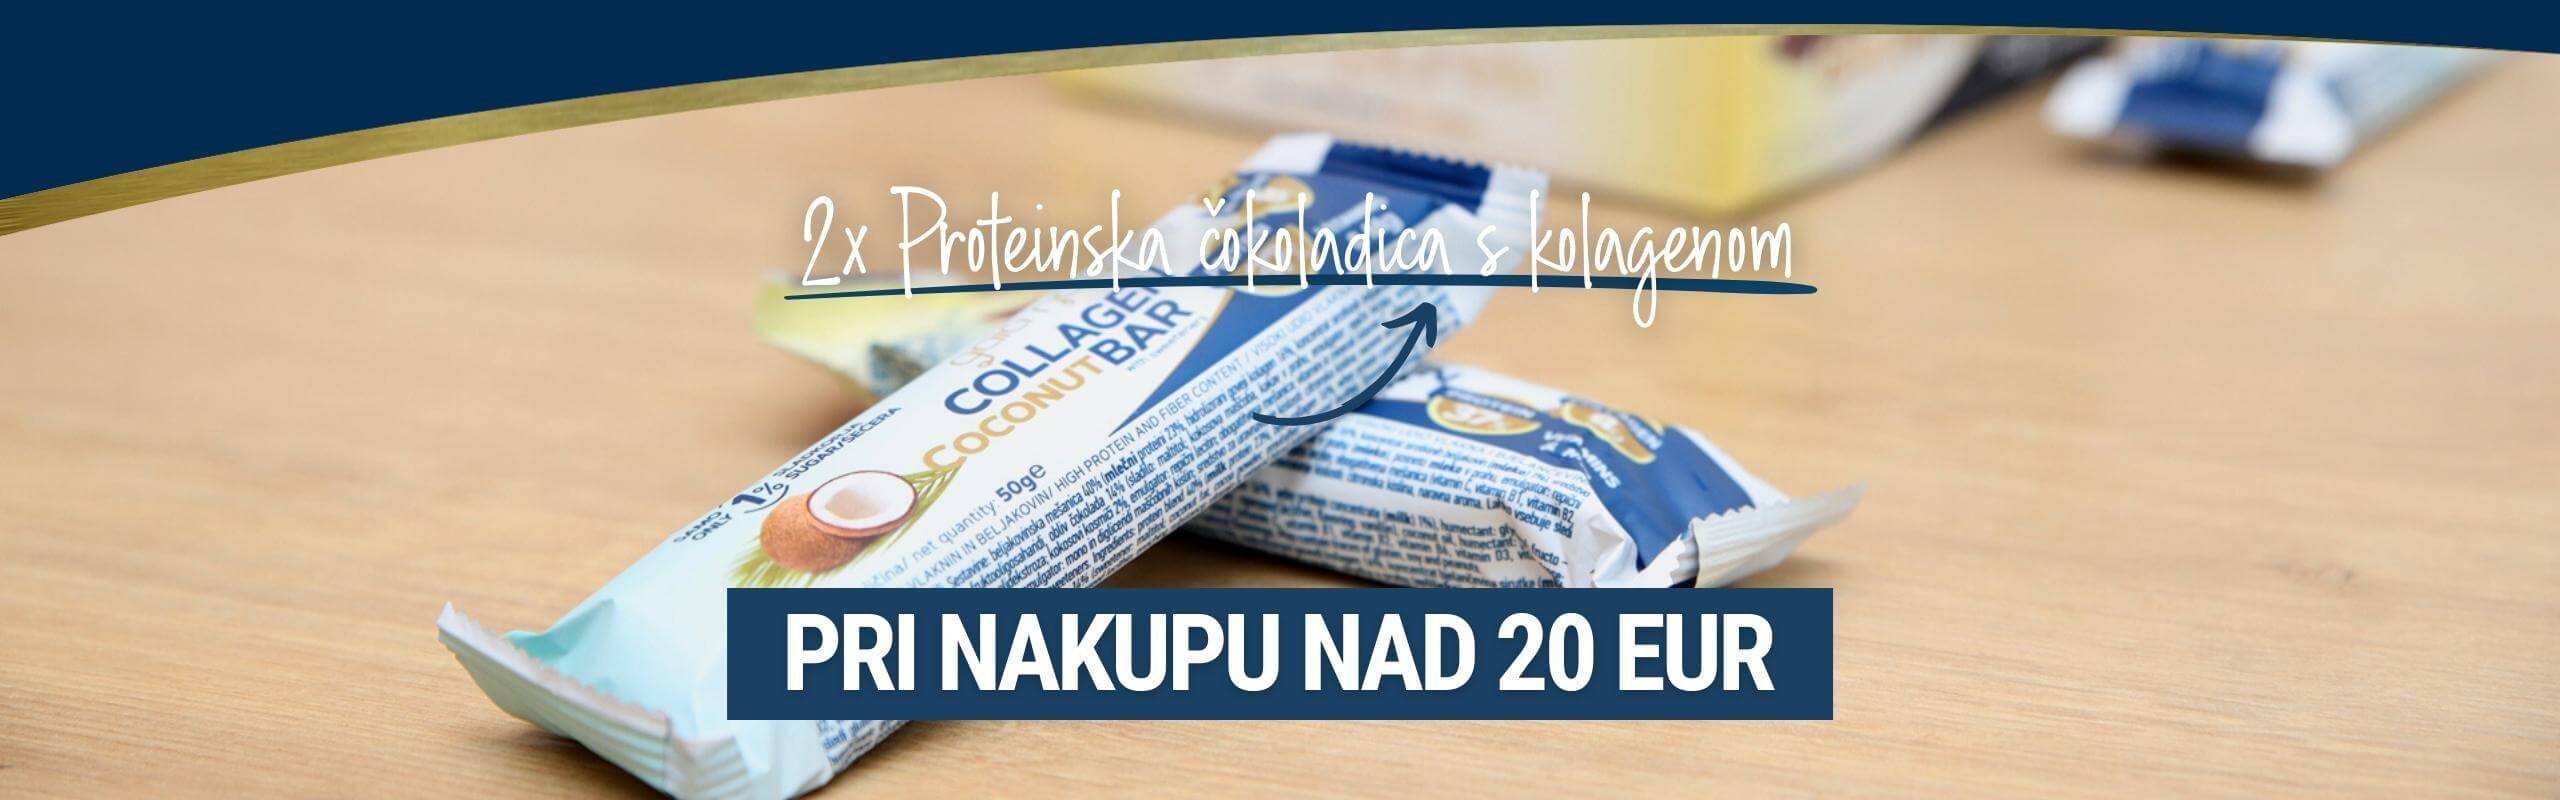 Pri nakupu nad 20 EUR prejmete 2x proteinsko čokoladico s kolagenom GRATIS